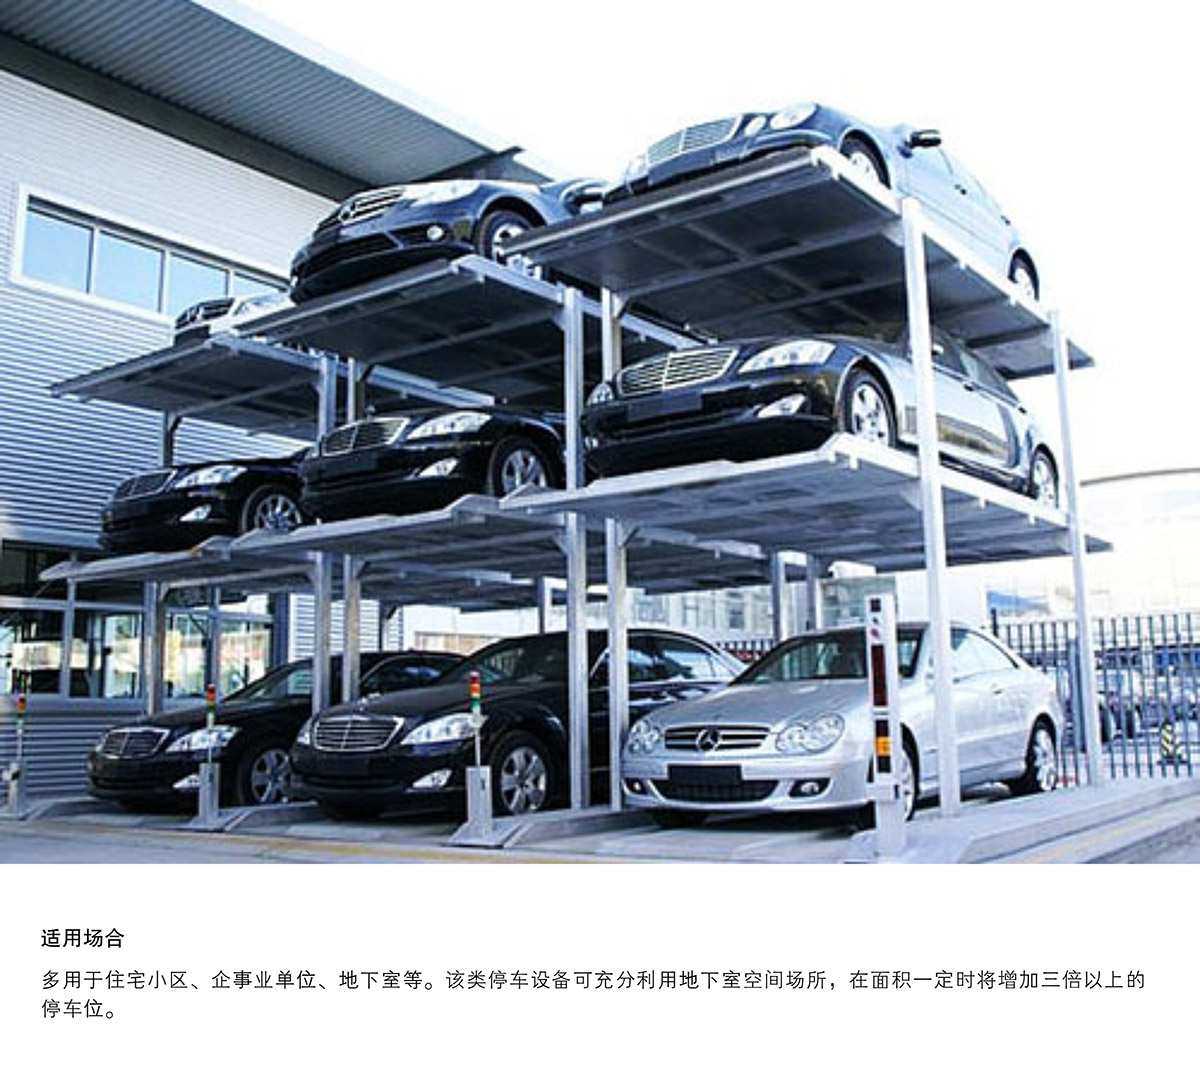 机械车位PJS3D2三层地坑简易升降停车设备适用场合.jpg